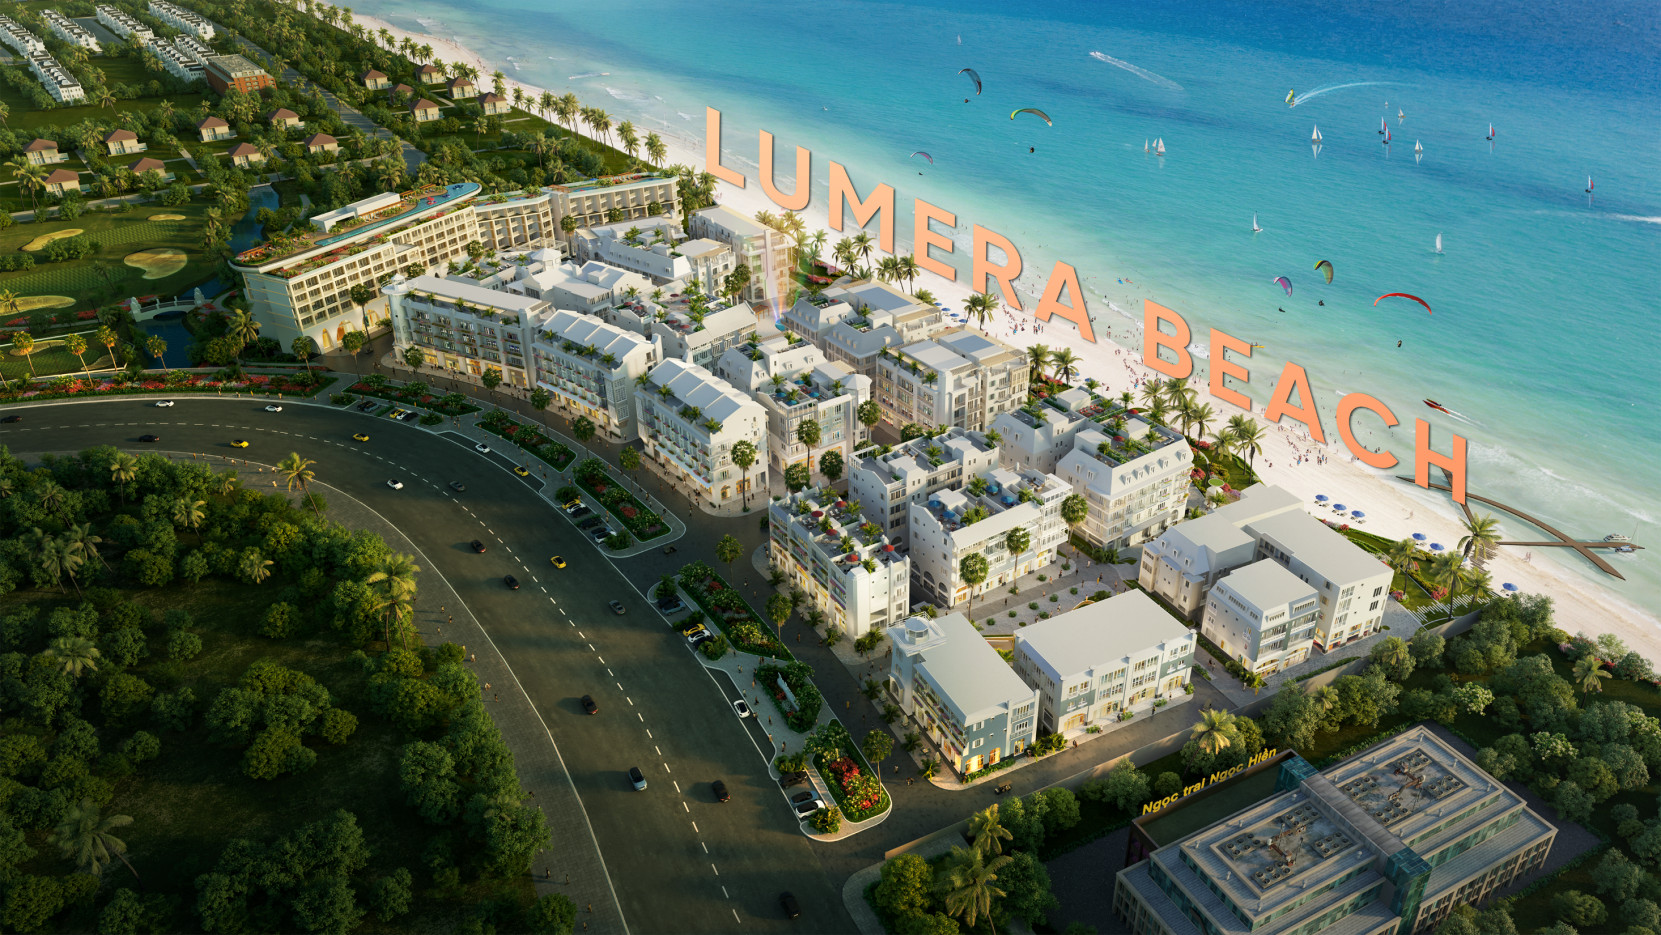 Dòng sản phẩm Shopstay kết hợp mua sắm và lưu trú tại dự án Lumera Beach (Phú Quốc) đang được đón nhận khá tốt trên thị trường